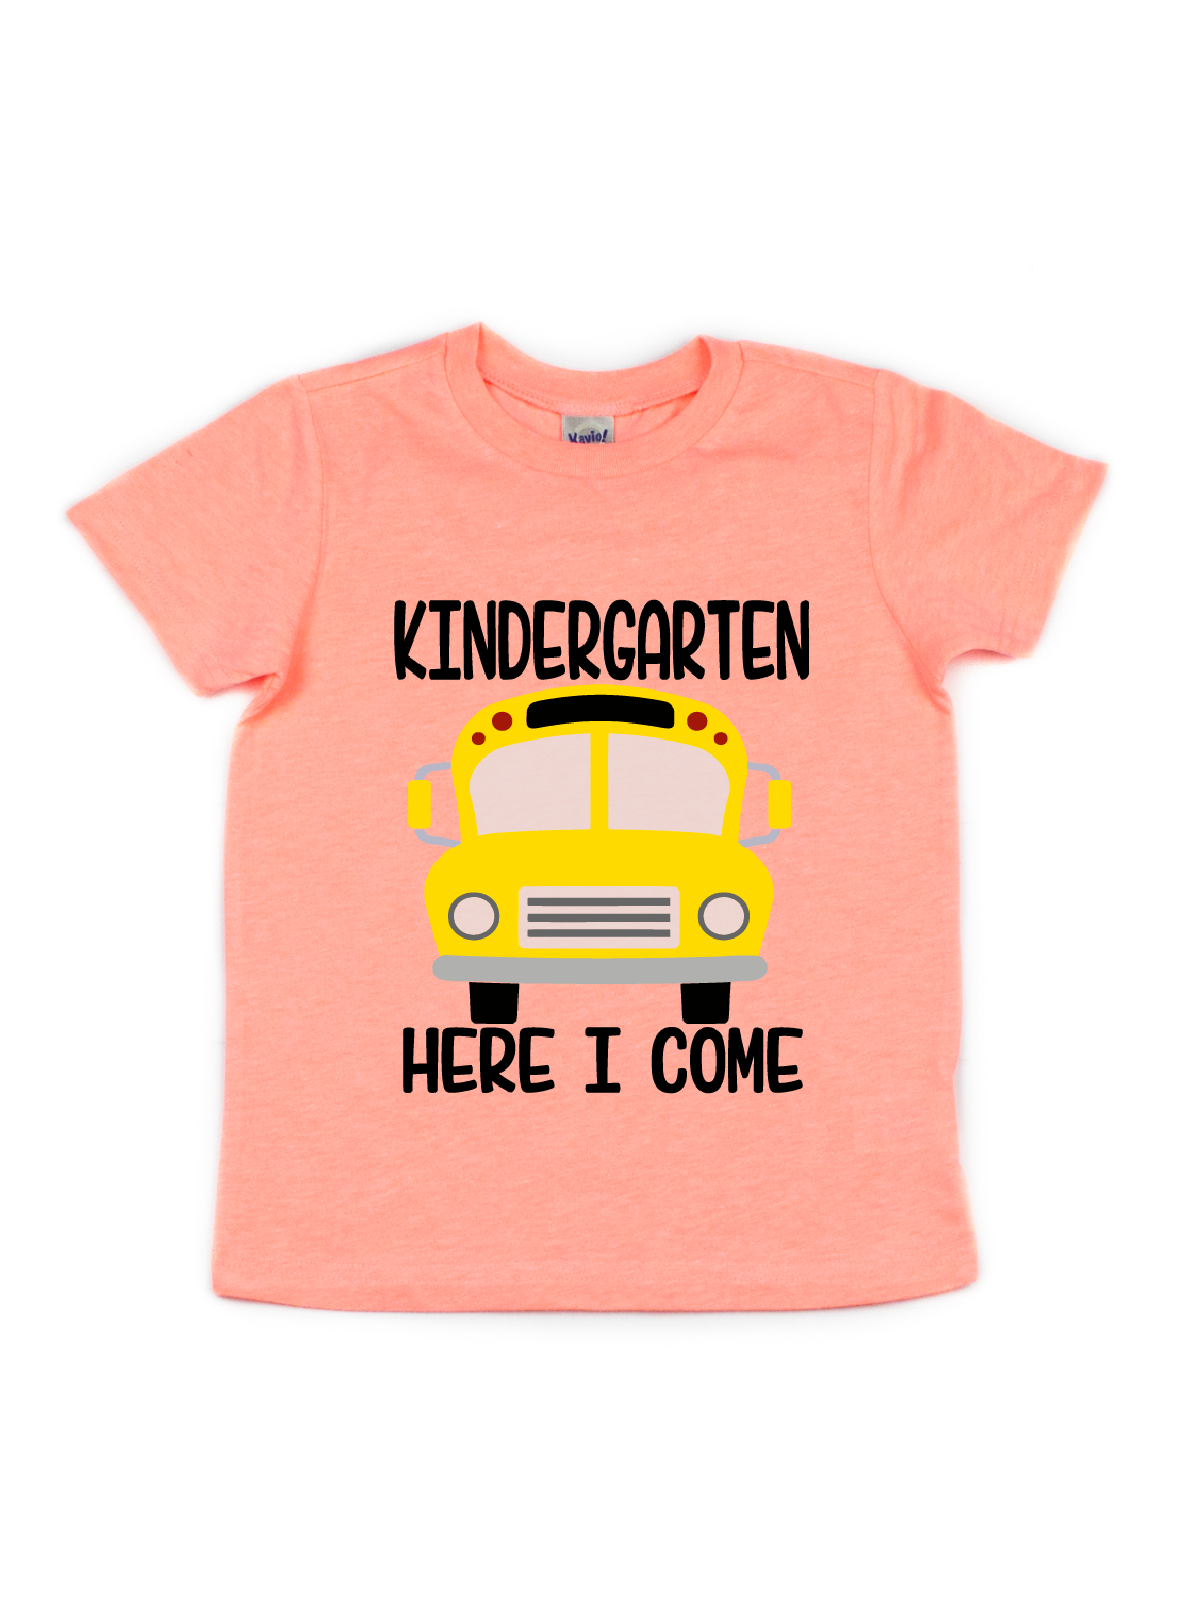 Kindergarten Here I Come Kids Shirt in Orange